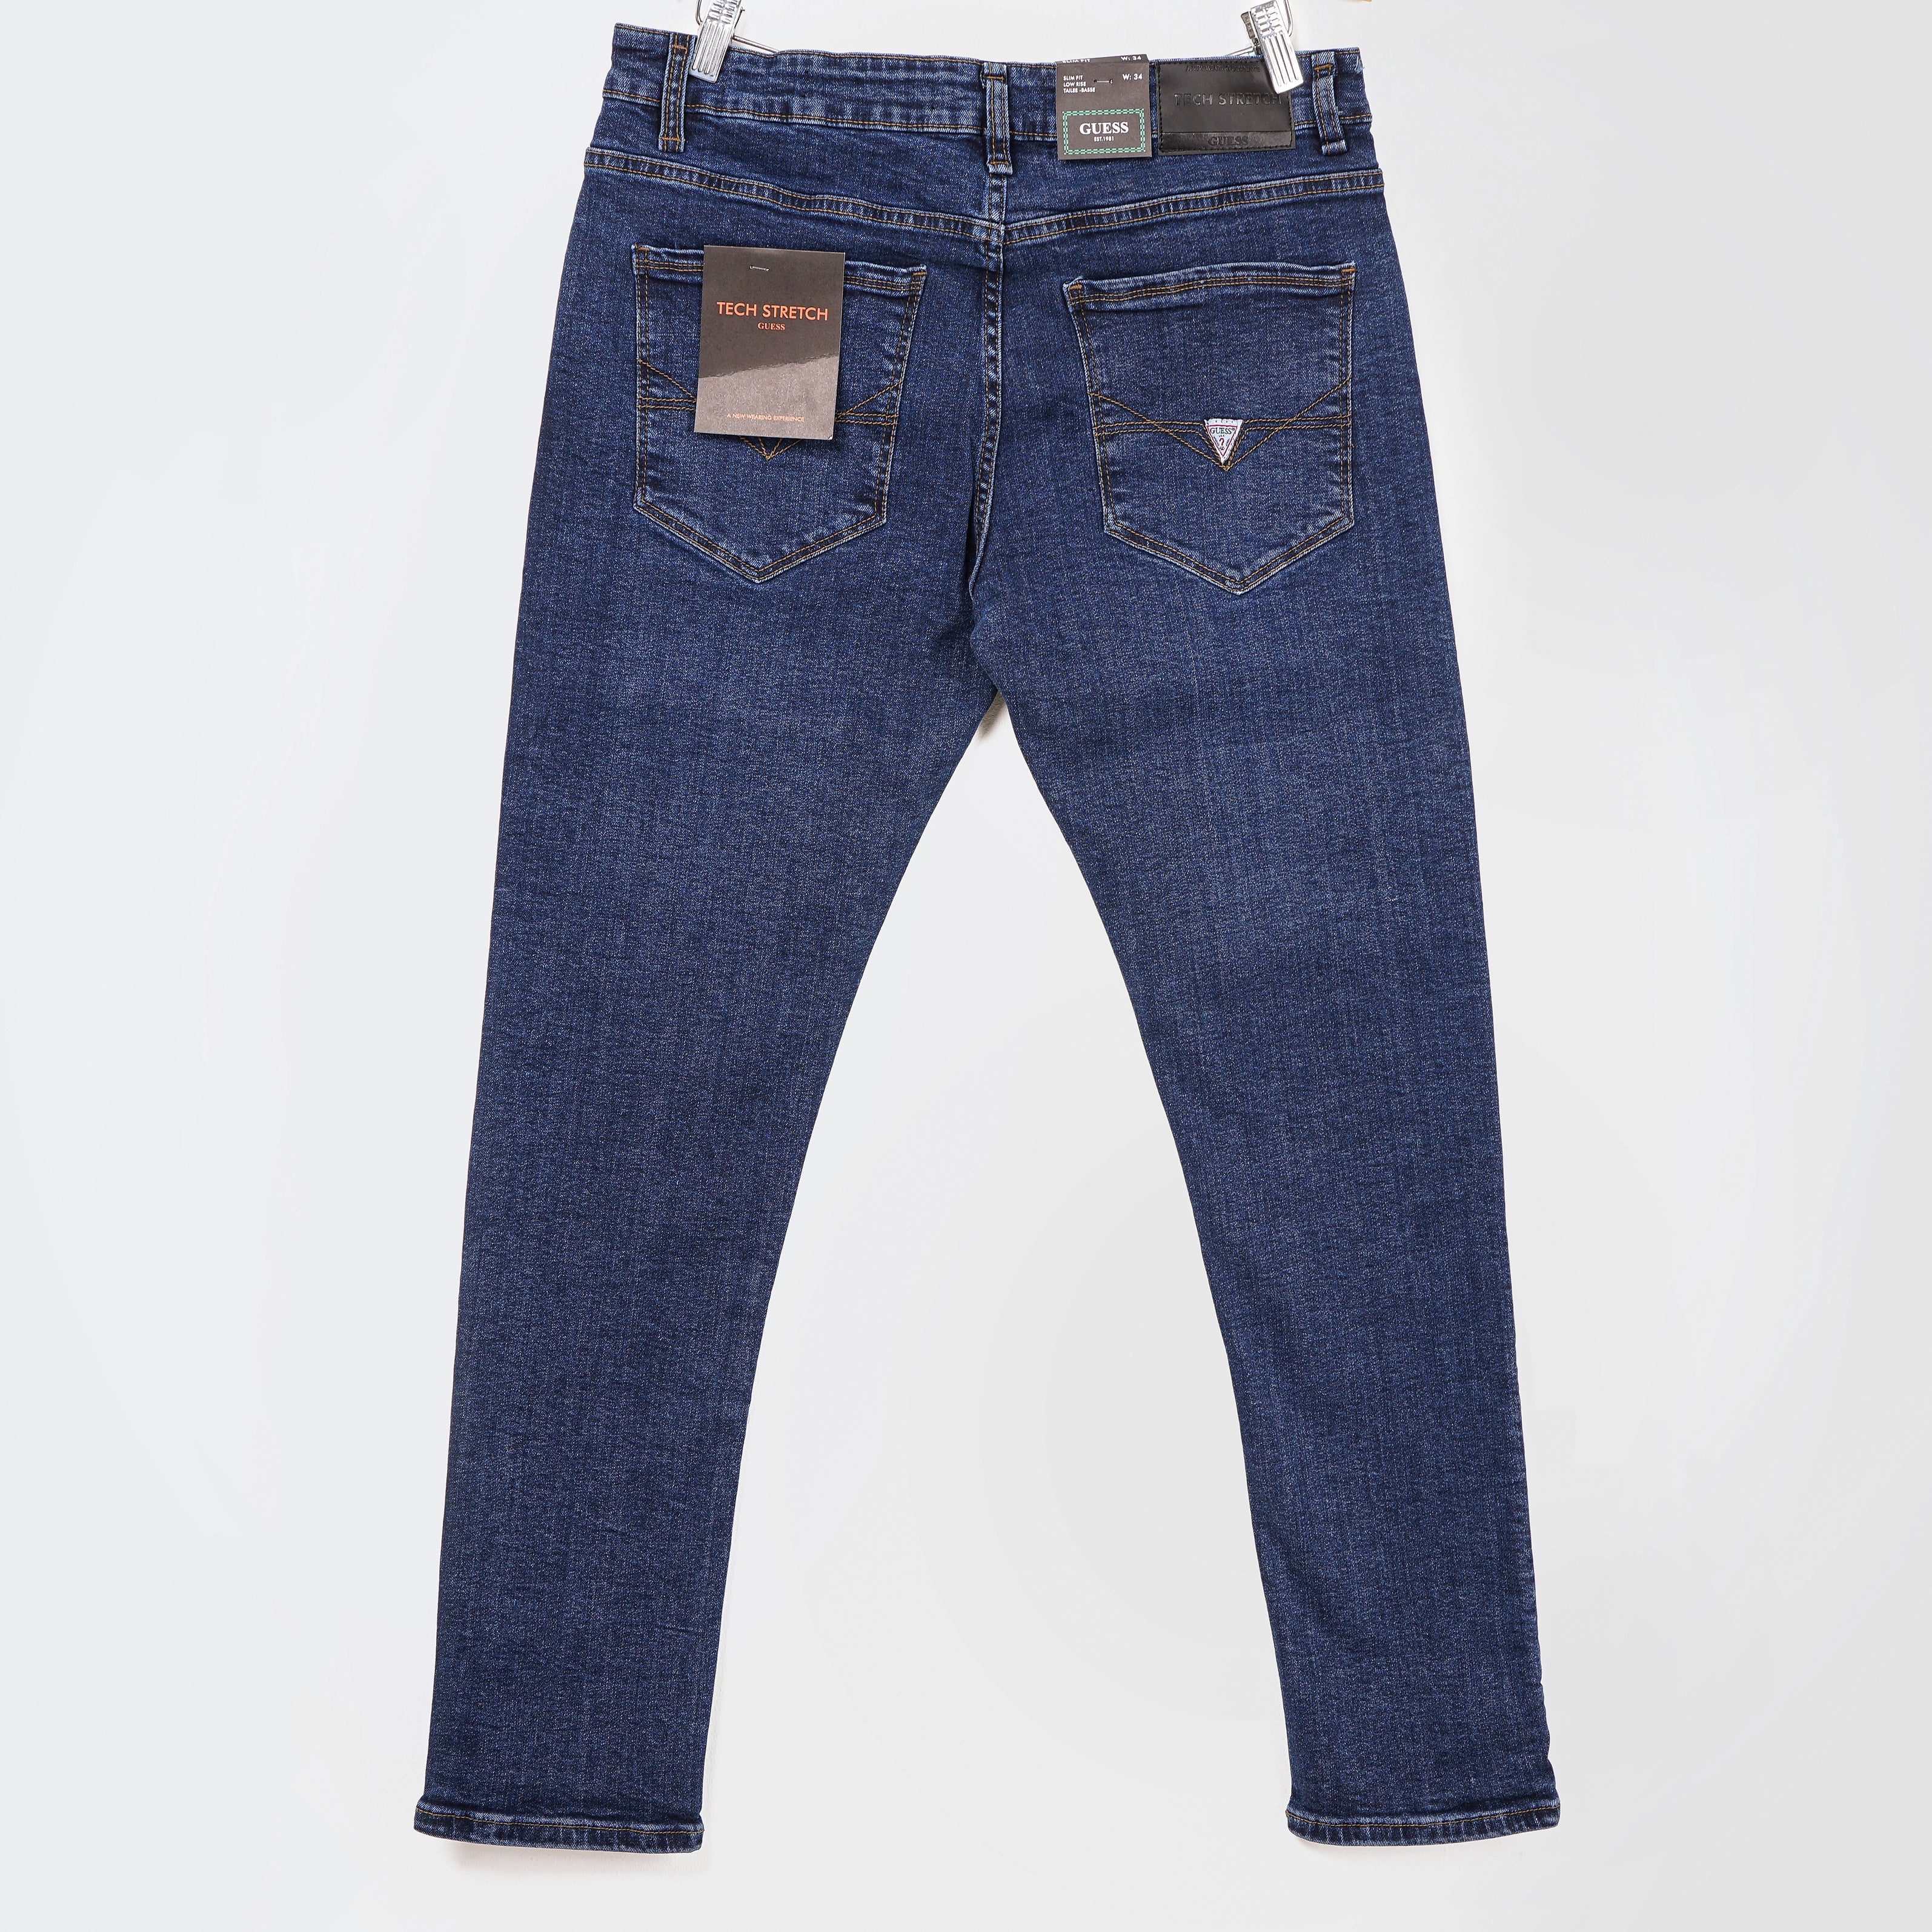 Original Guess Slim Fit low Rise Jeans - Marca Deals - Guess